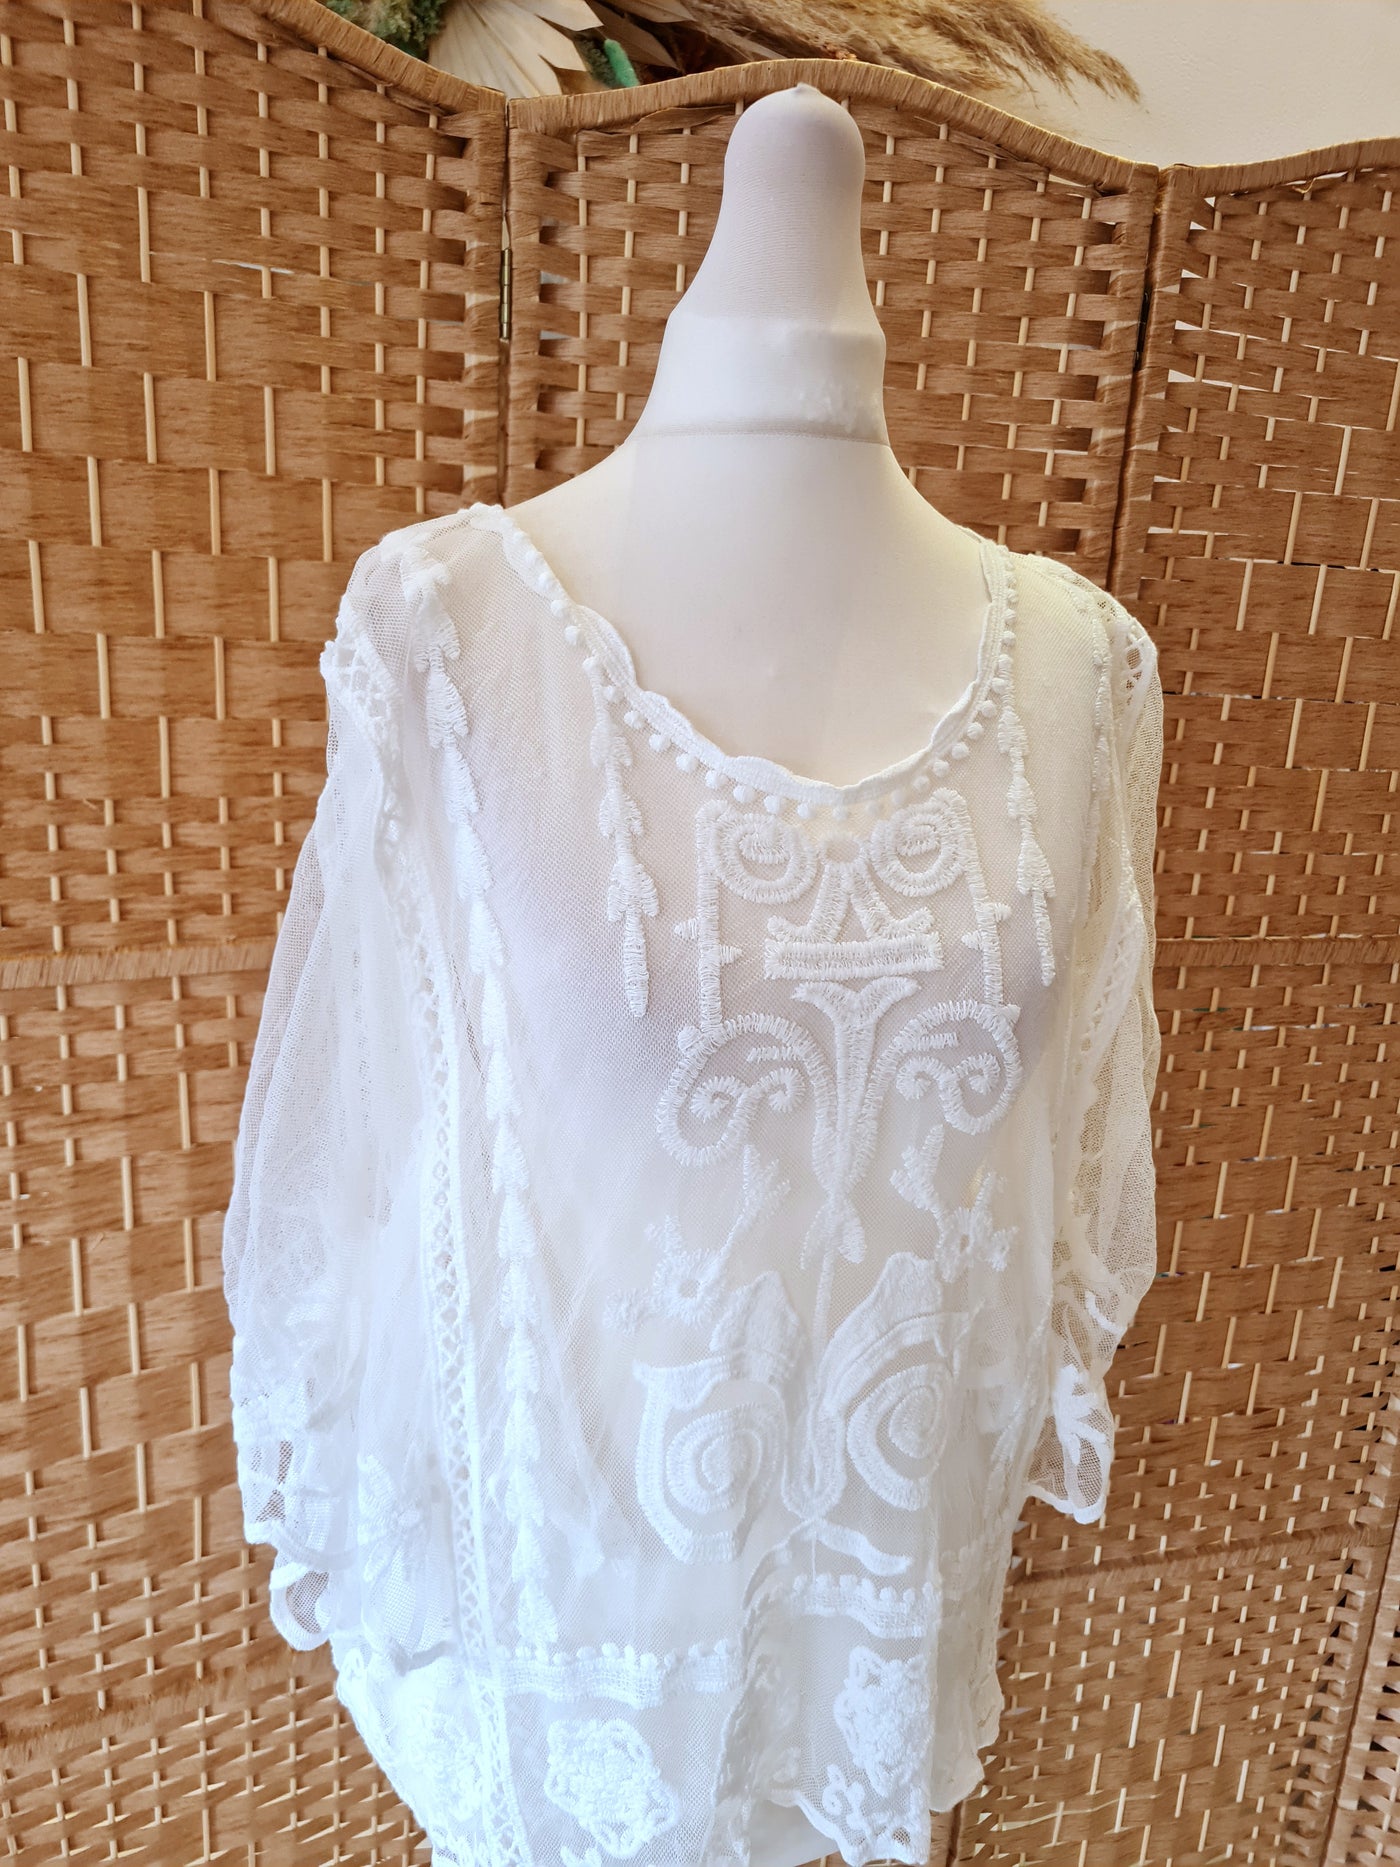 Exquiss's Paris White Lace Blouse Size Medium NWT